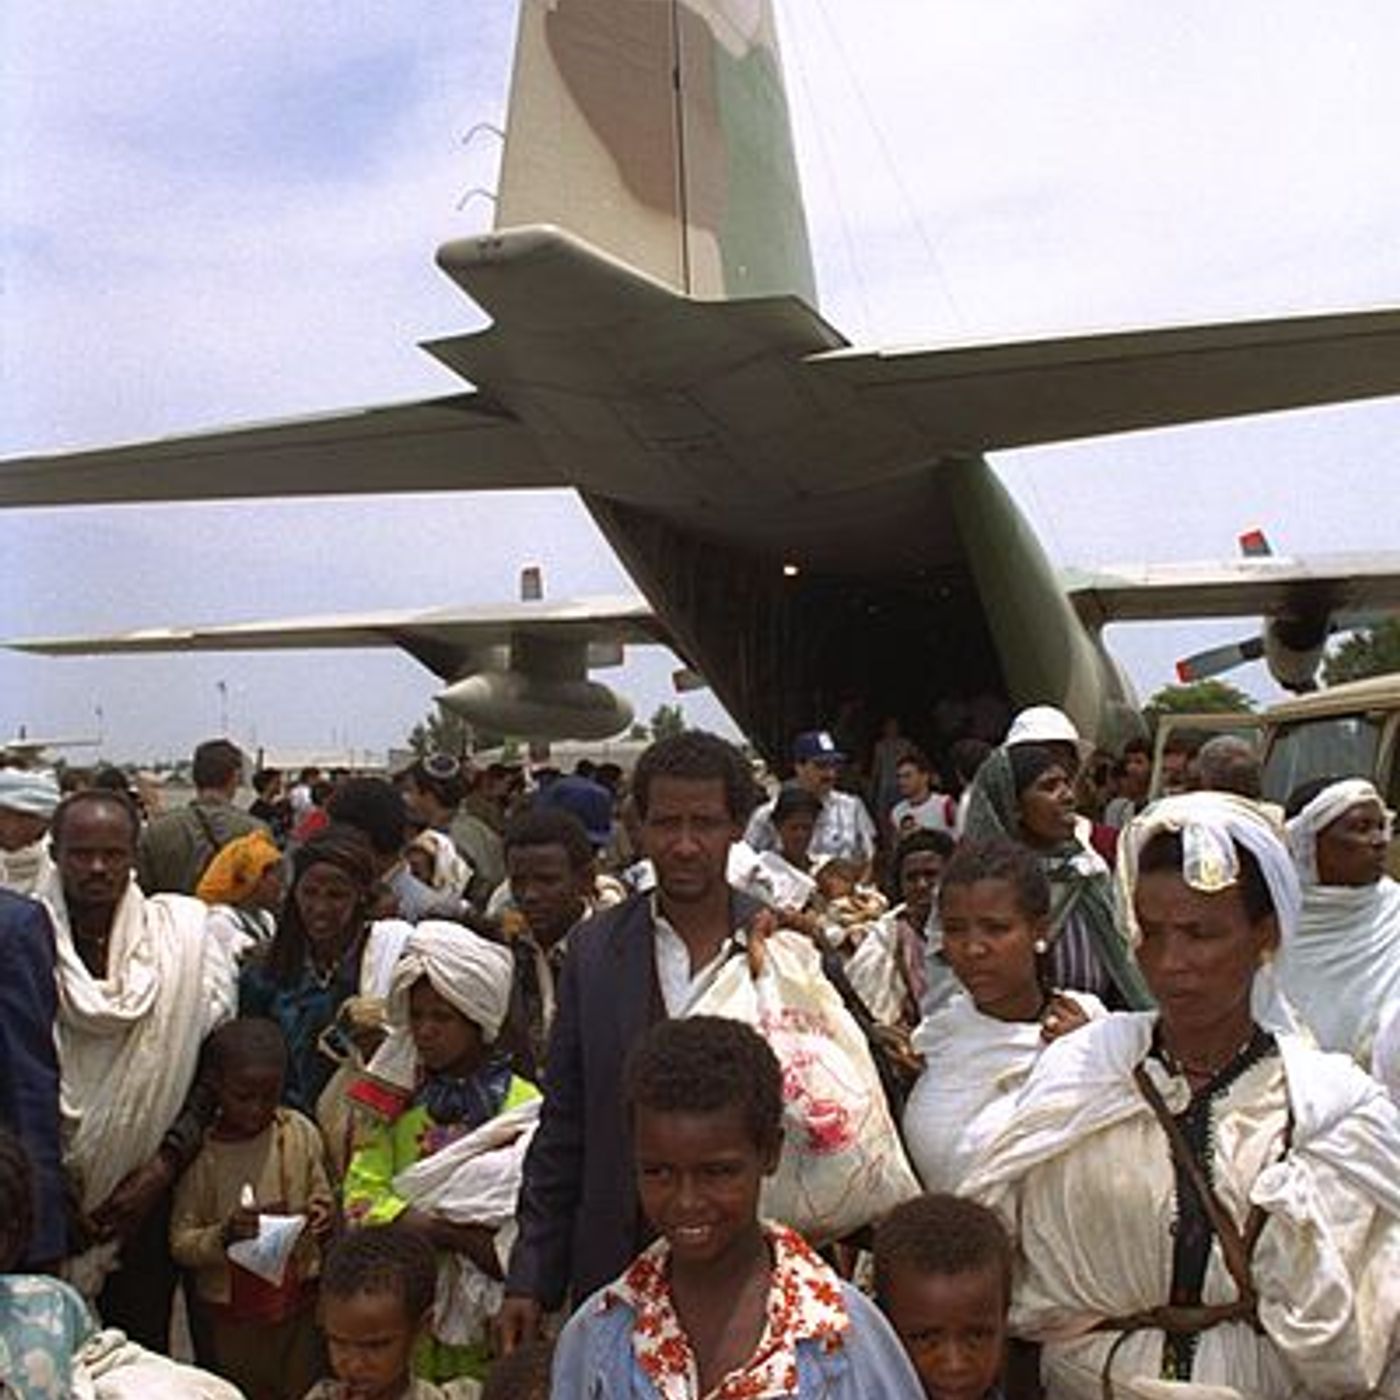 פרק 444: ”ושם בדאכאו זה היכה בי” – מיכה פלדמן מספר על מבצע שלמה - יציאת אתיופיה 25